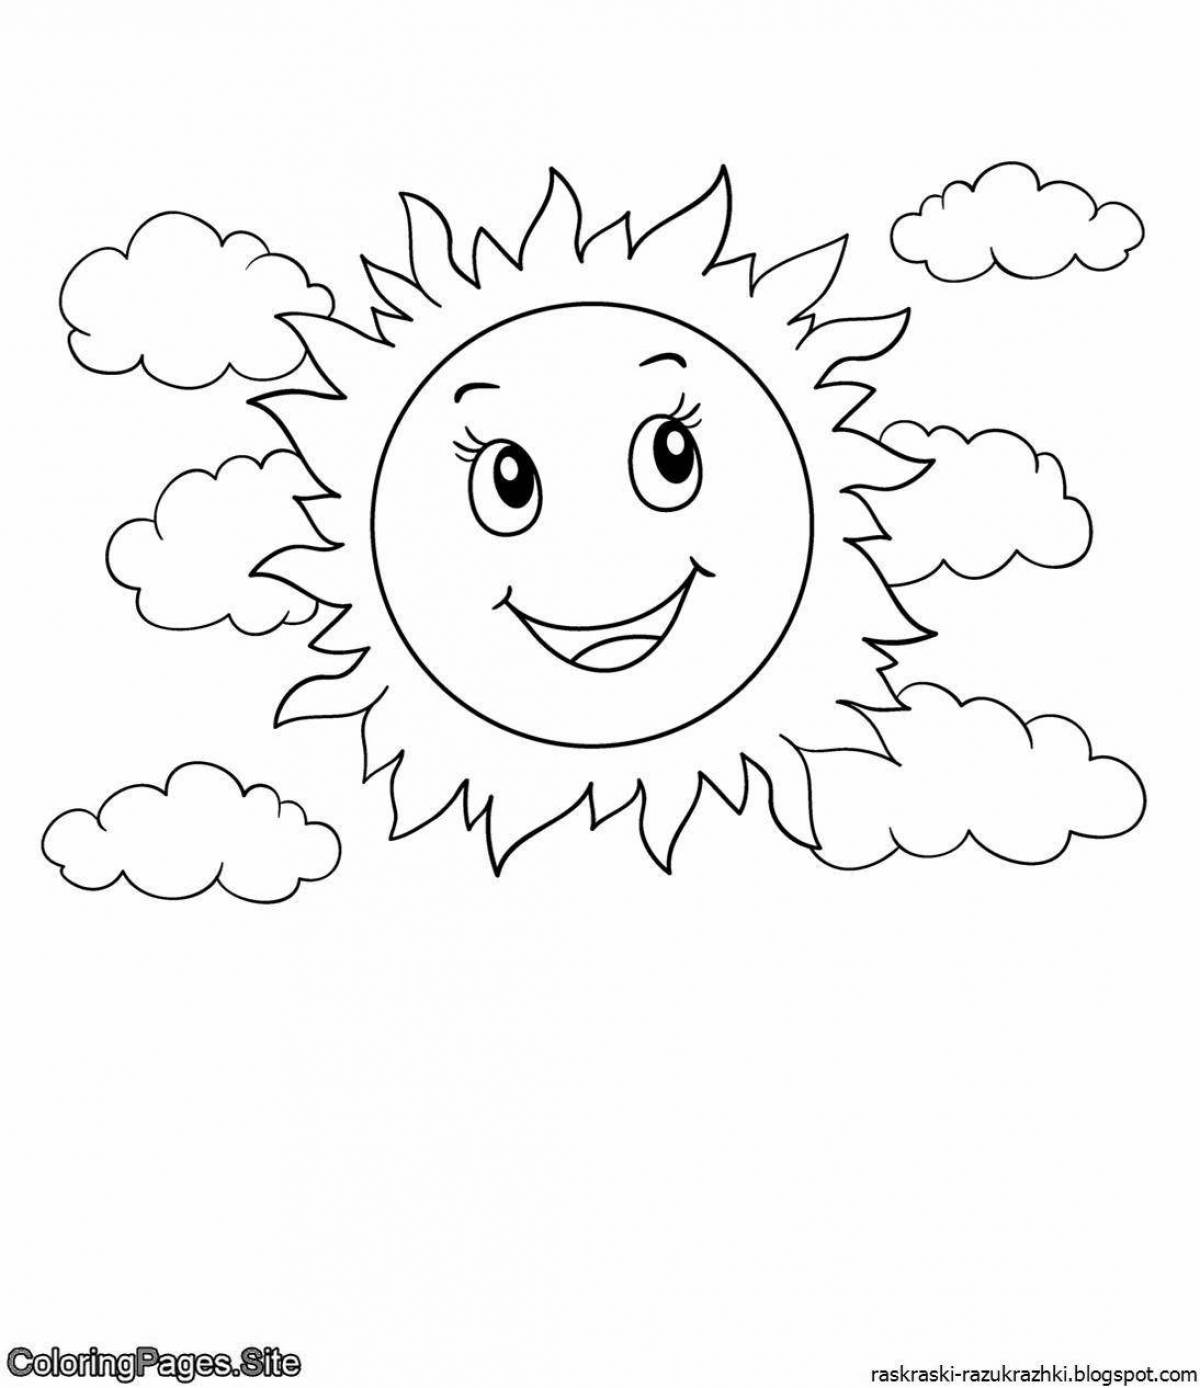 Очаровательная раскраска солнце для детей 4-5 лет